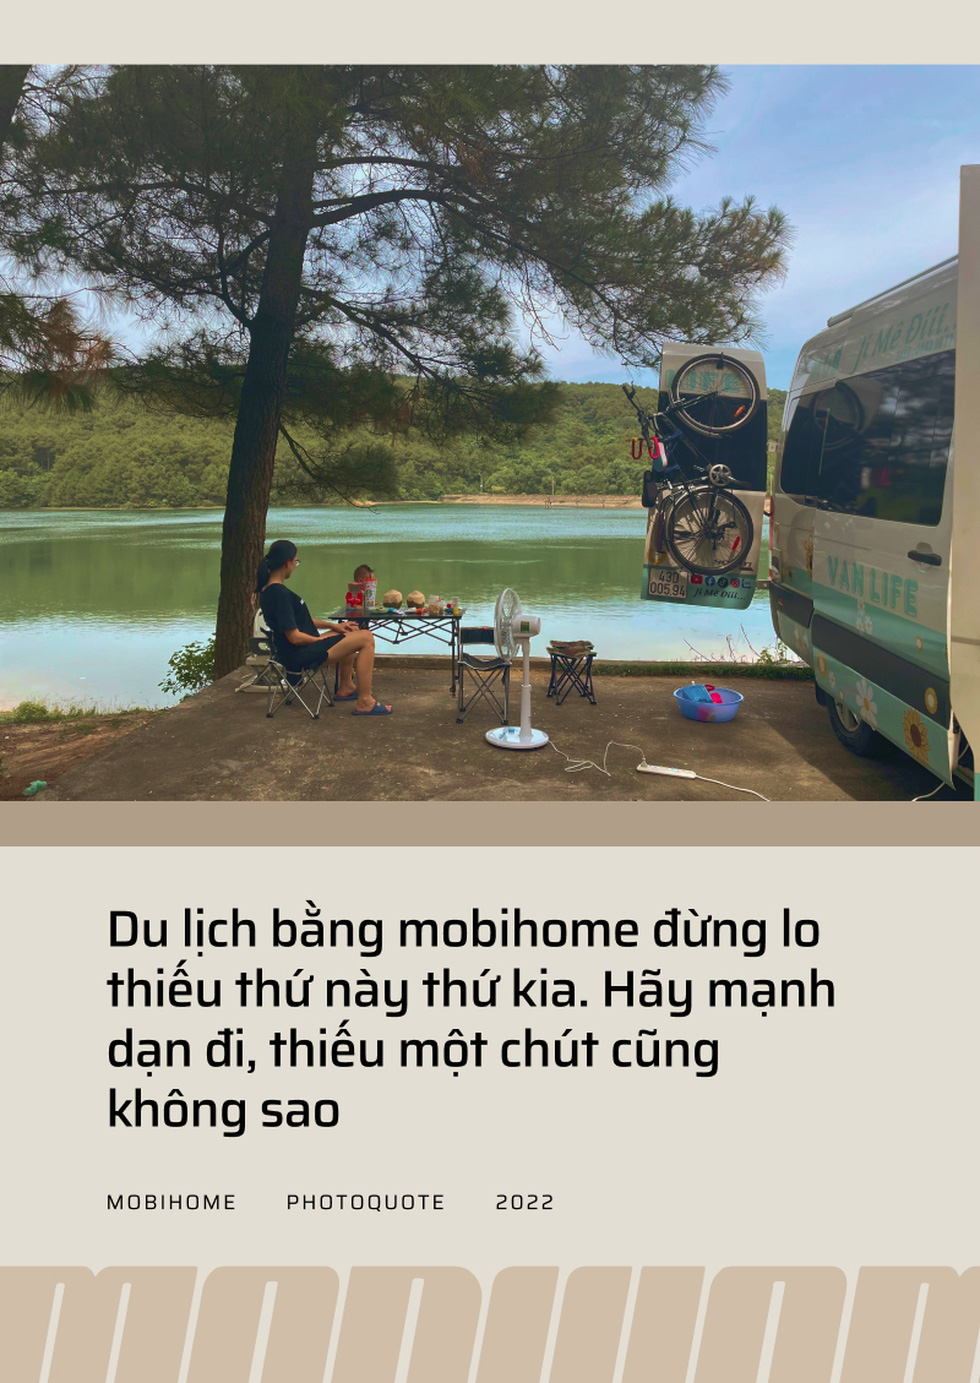 8X Sài Gòn chế mobihome từ Hyundai Solati, đưa vợ bầu, con nhỏ đi xuyên Việt - Ảnh 6.